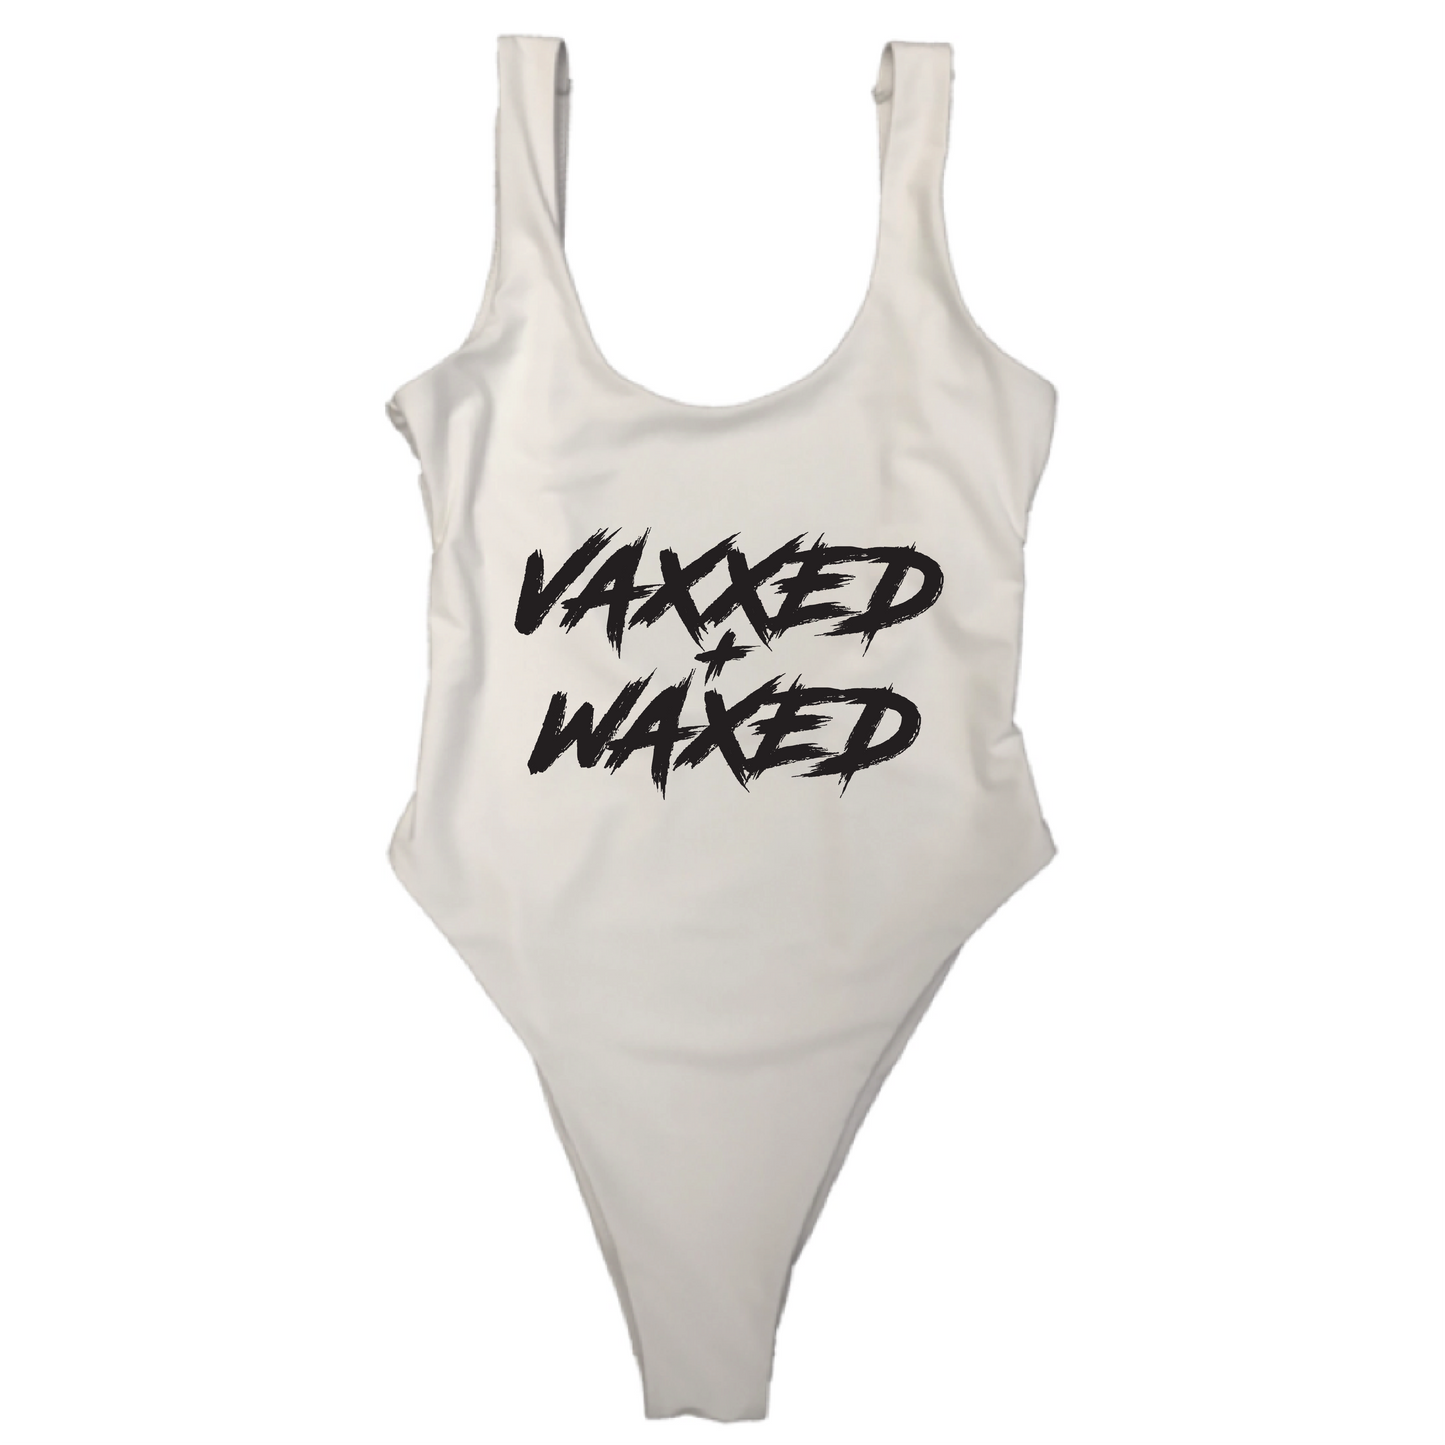 VAXXED + WAXED